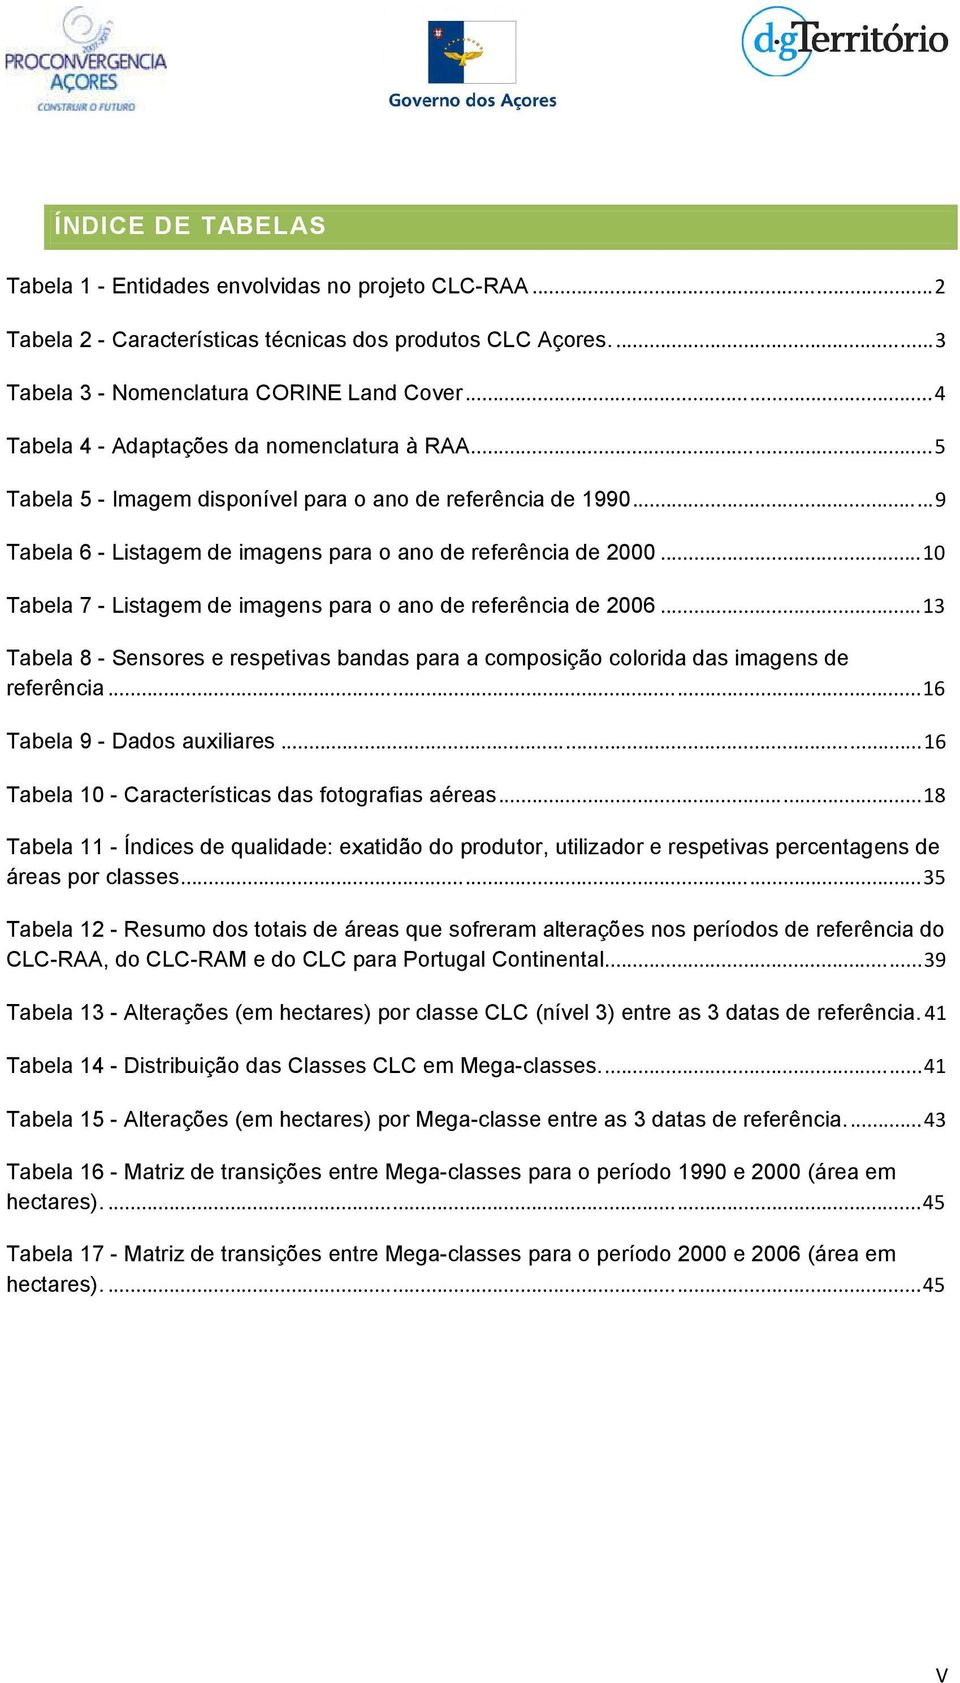 ..10 Tabela 7 - Listagem de imagens para o ano de referência de 2006...13 Tabela 8 - Sensores e respetivas bandas para a composição colorida das imagens de referência...16 Tabela 9 - Dados auxiliares.